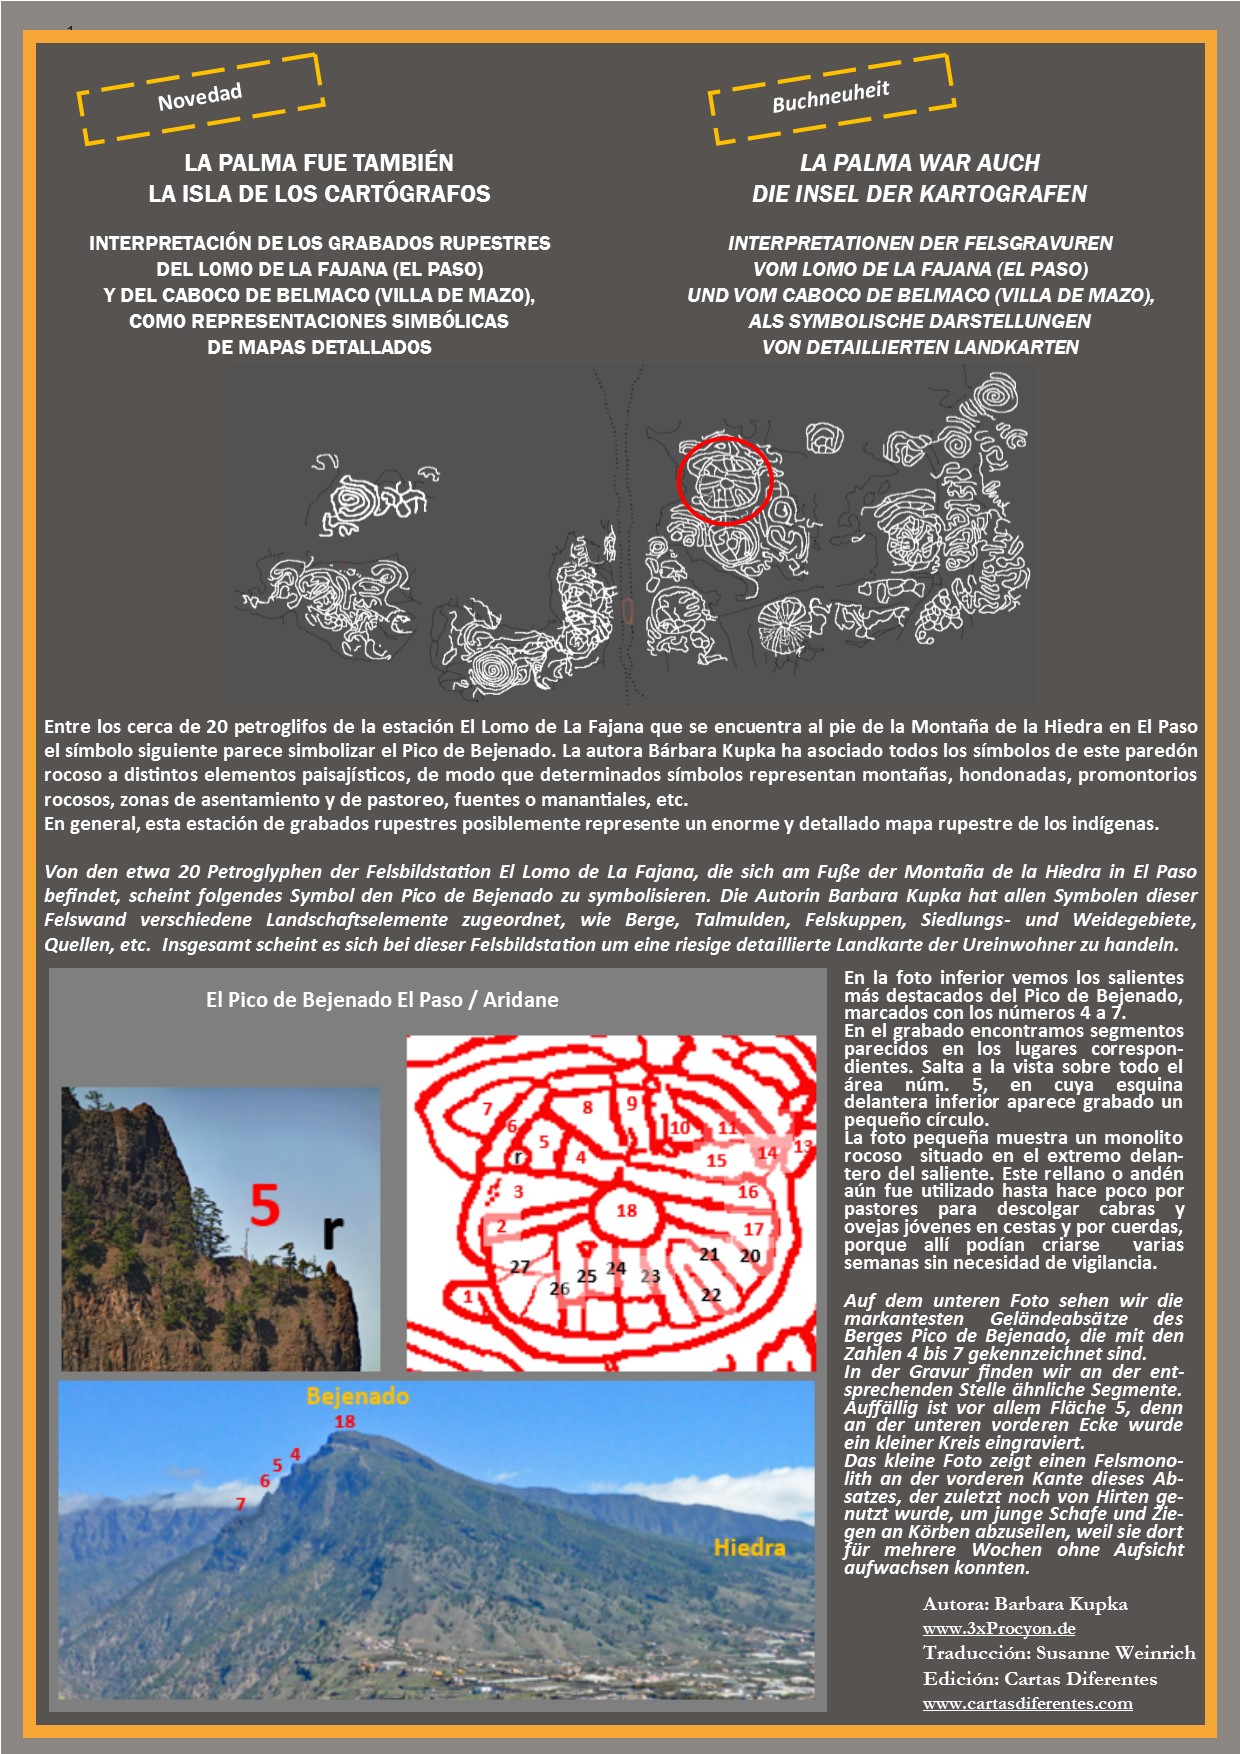 Este petroglifo muestra características asociables a las del Pico de Bejenado, El Paso / La Palma.